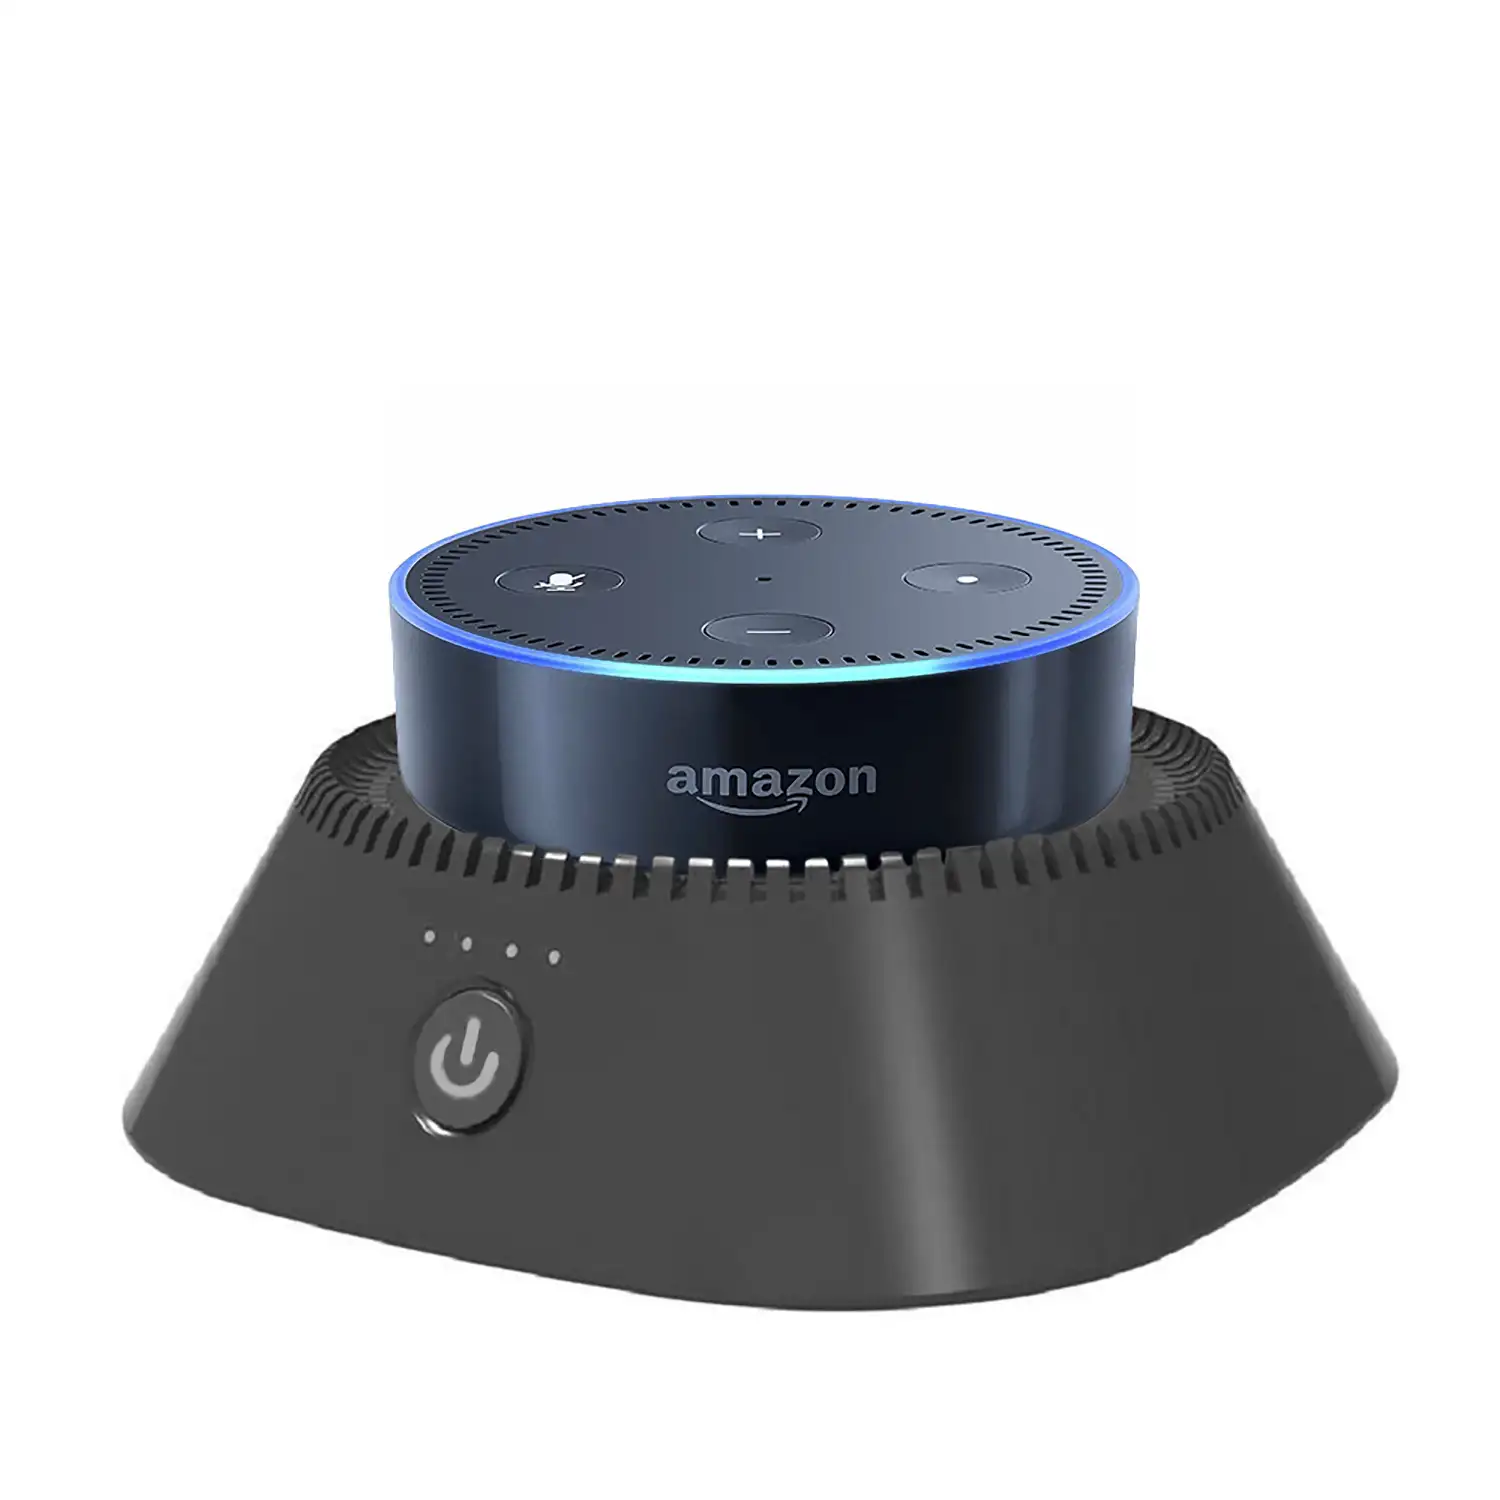 Powerbank de 10400mAh con soporte para Amazon Echo Dot (Gen 2)